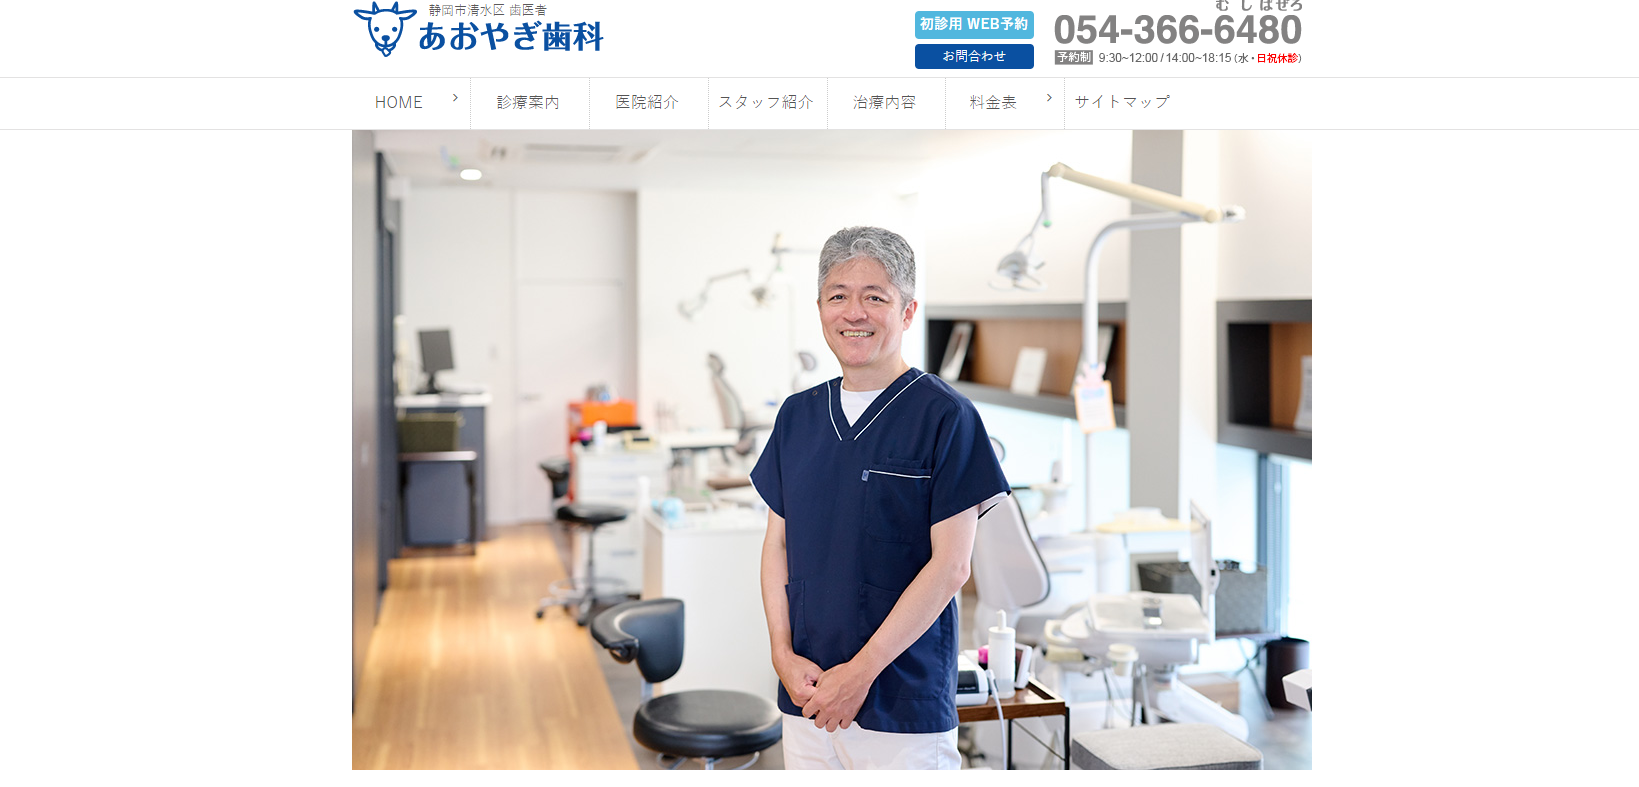 静岡市の予防歯科診療におすすめの歯科クリニック5選 あおやぎ歯科